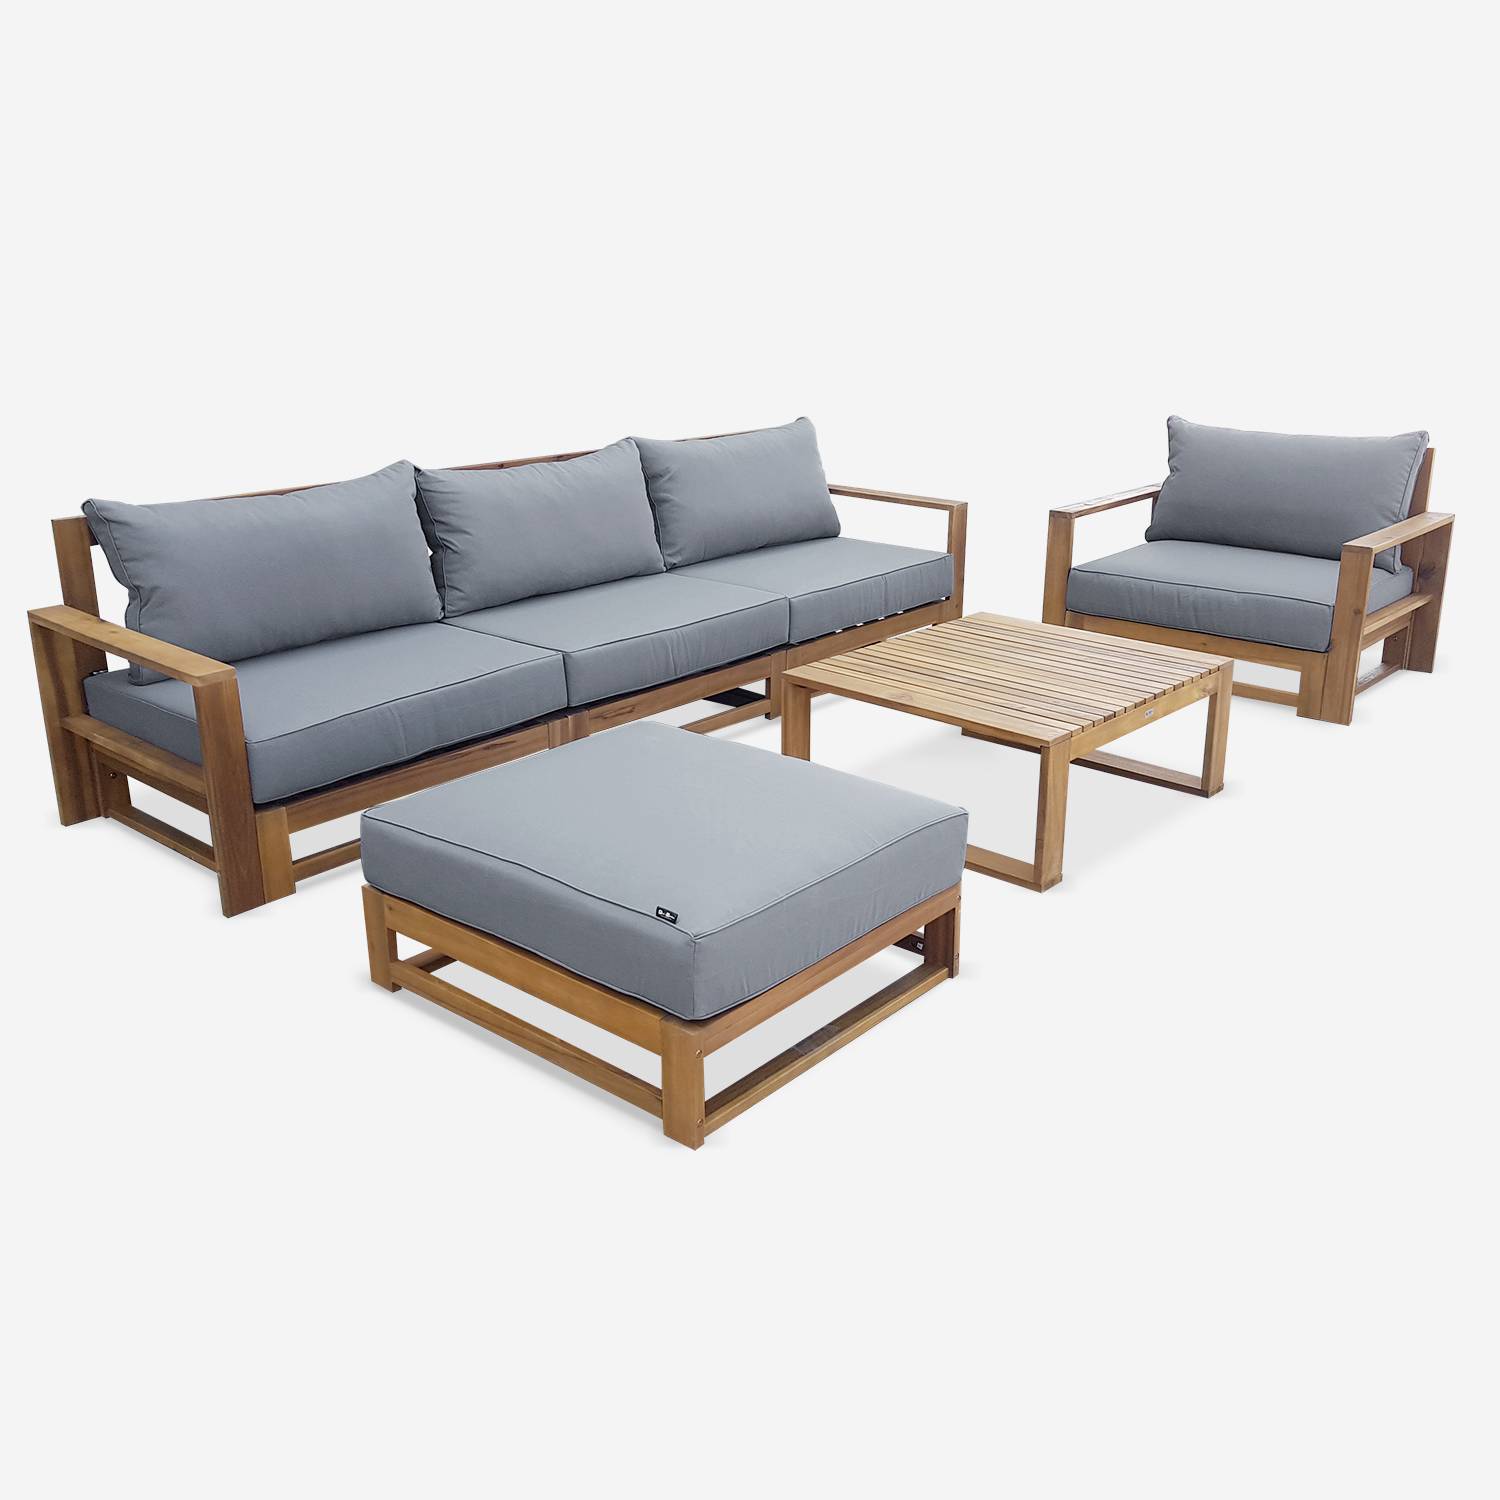 Gartenmöbel aus Holz mit 5 Sitzplätzen - Mendoza - graue Kissen, Sofa, Sessel und Couchtisch aus Akazie, 6 modulare Elemente, Design Photo4